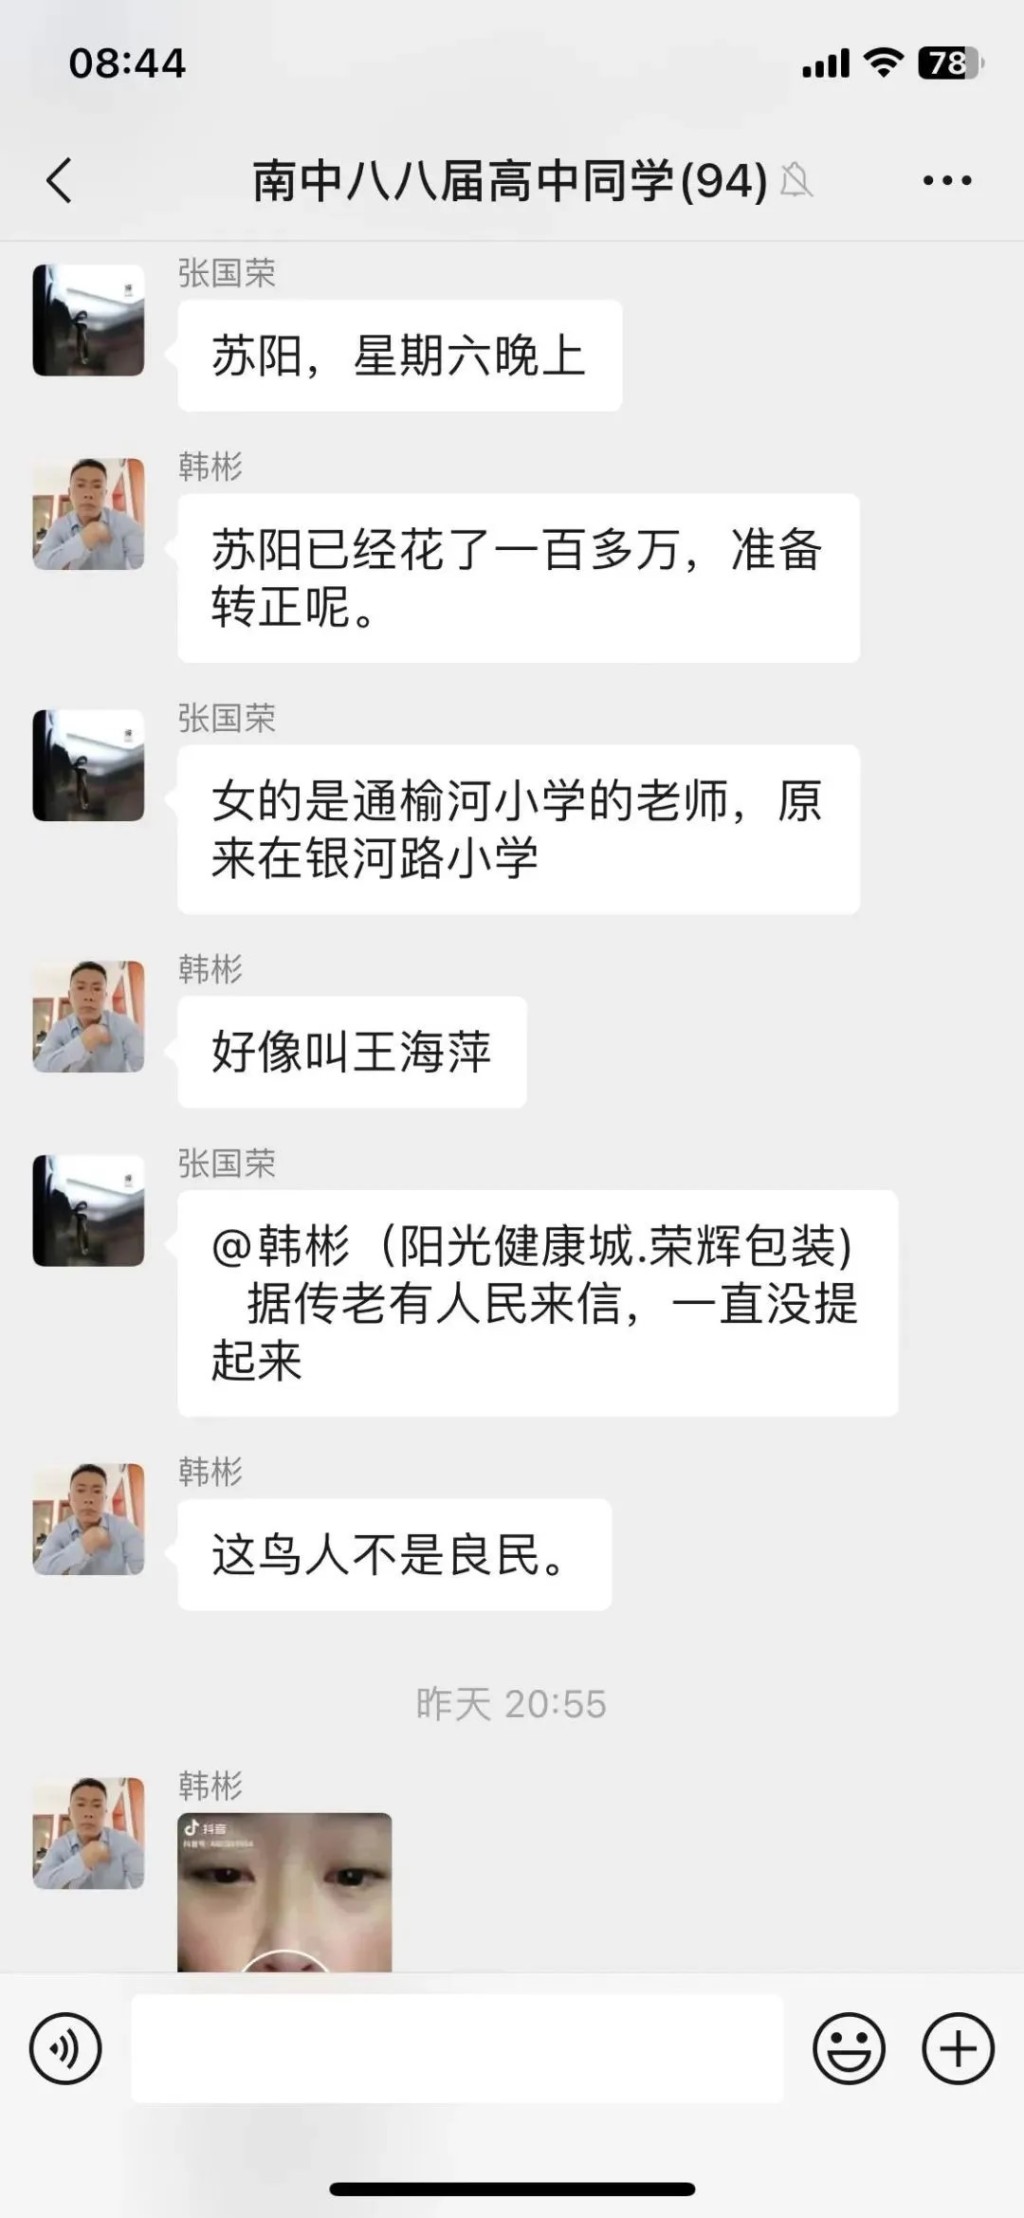 網民一度廣泛討論響水縣城管局副局長蘇陽及小學女教師王海萍懷疑「車震」事件。